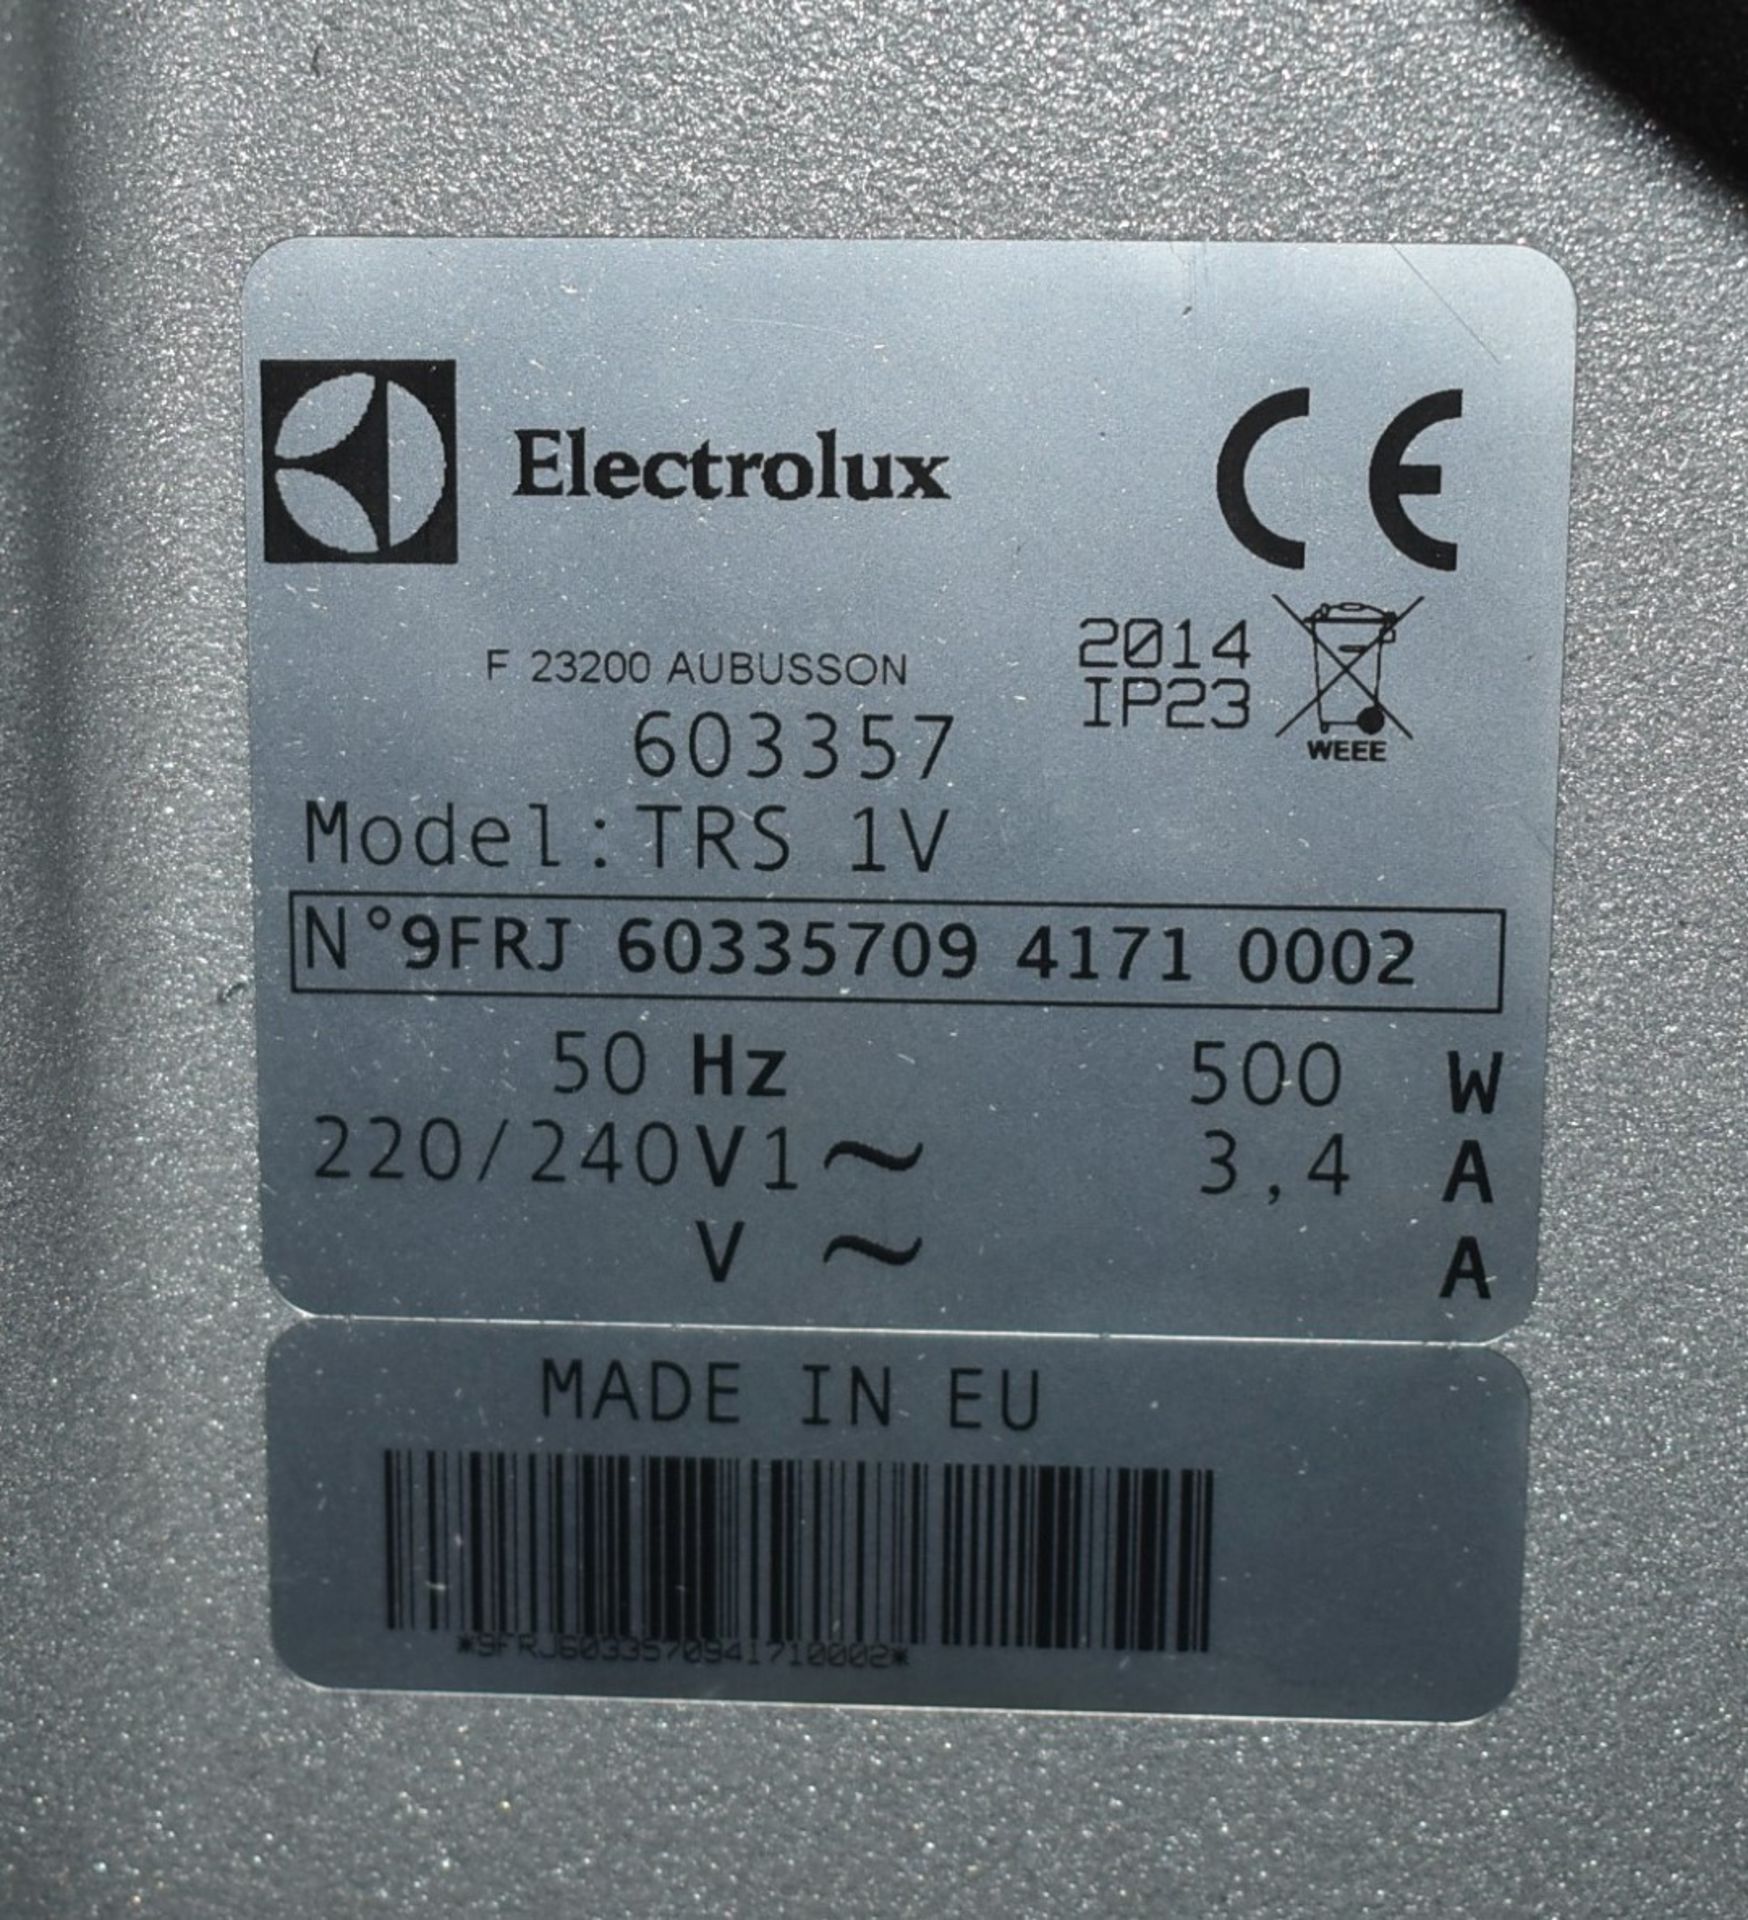 1 x Electrolux TRS 1v Vegetable Slicer - Single Speed, 340rpm, With 500w Motor and 240v UK Plug - Image 7 of 7